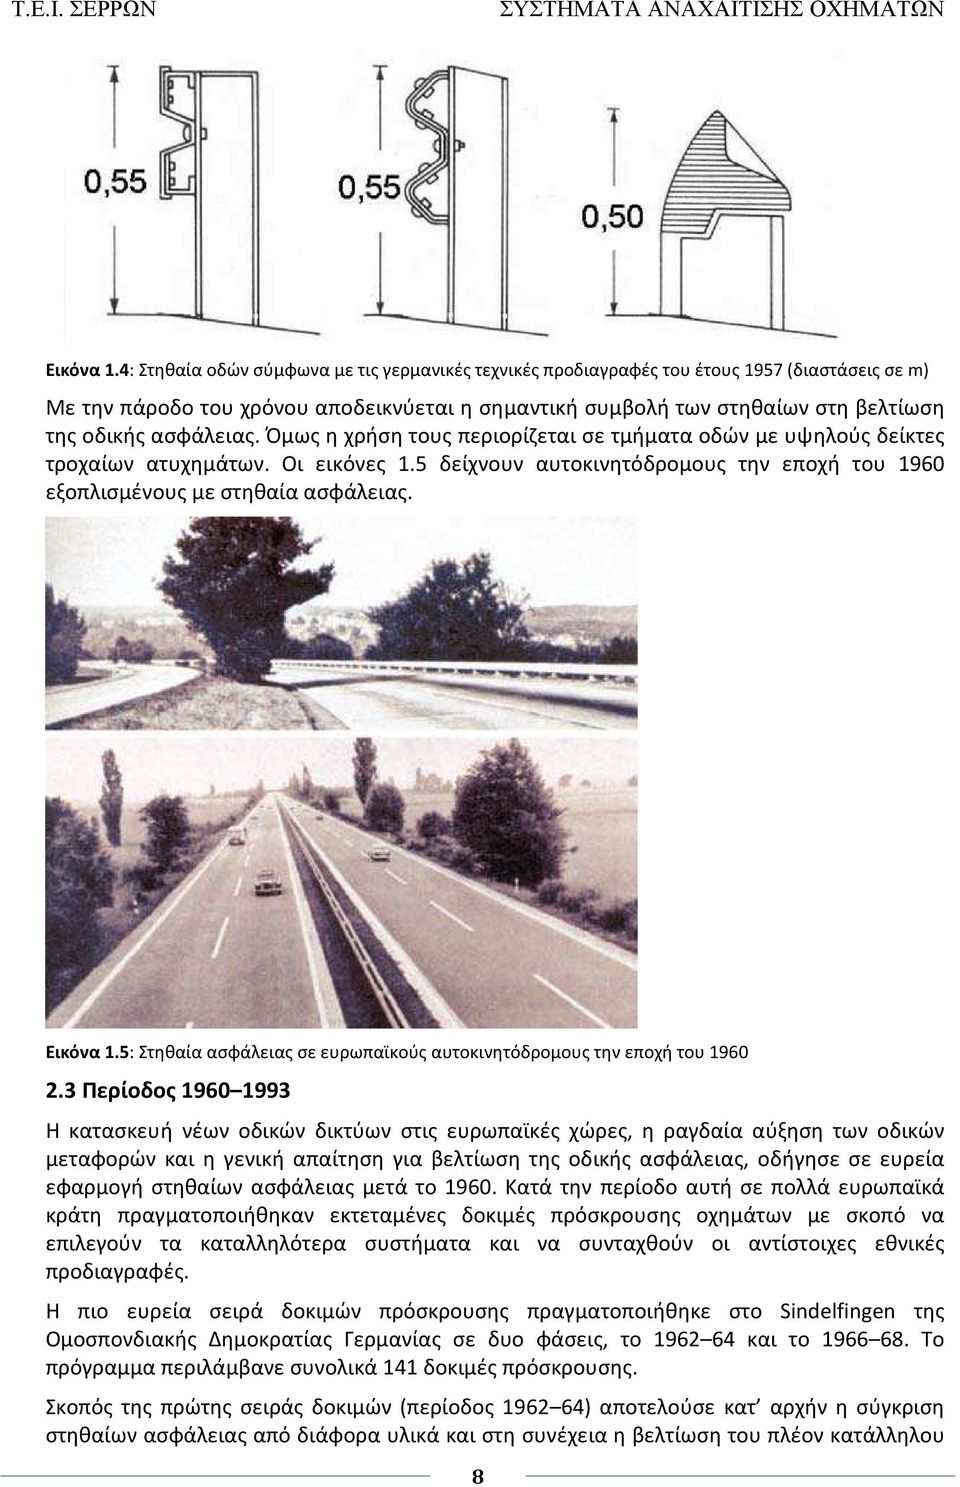 ασφάλειας. Όμως η χρήση τους περιορίζεται σε τμήματα οδών με υψηλούς δείκτες τροχαίων ατυχημάτων. Οι εικόνες 1.5 δείχνουν αυτοκινητόδρομους την εποχή του 1960 εξοπλισμένους με στηθαία ασφάλειας.